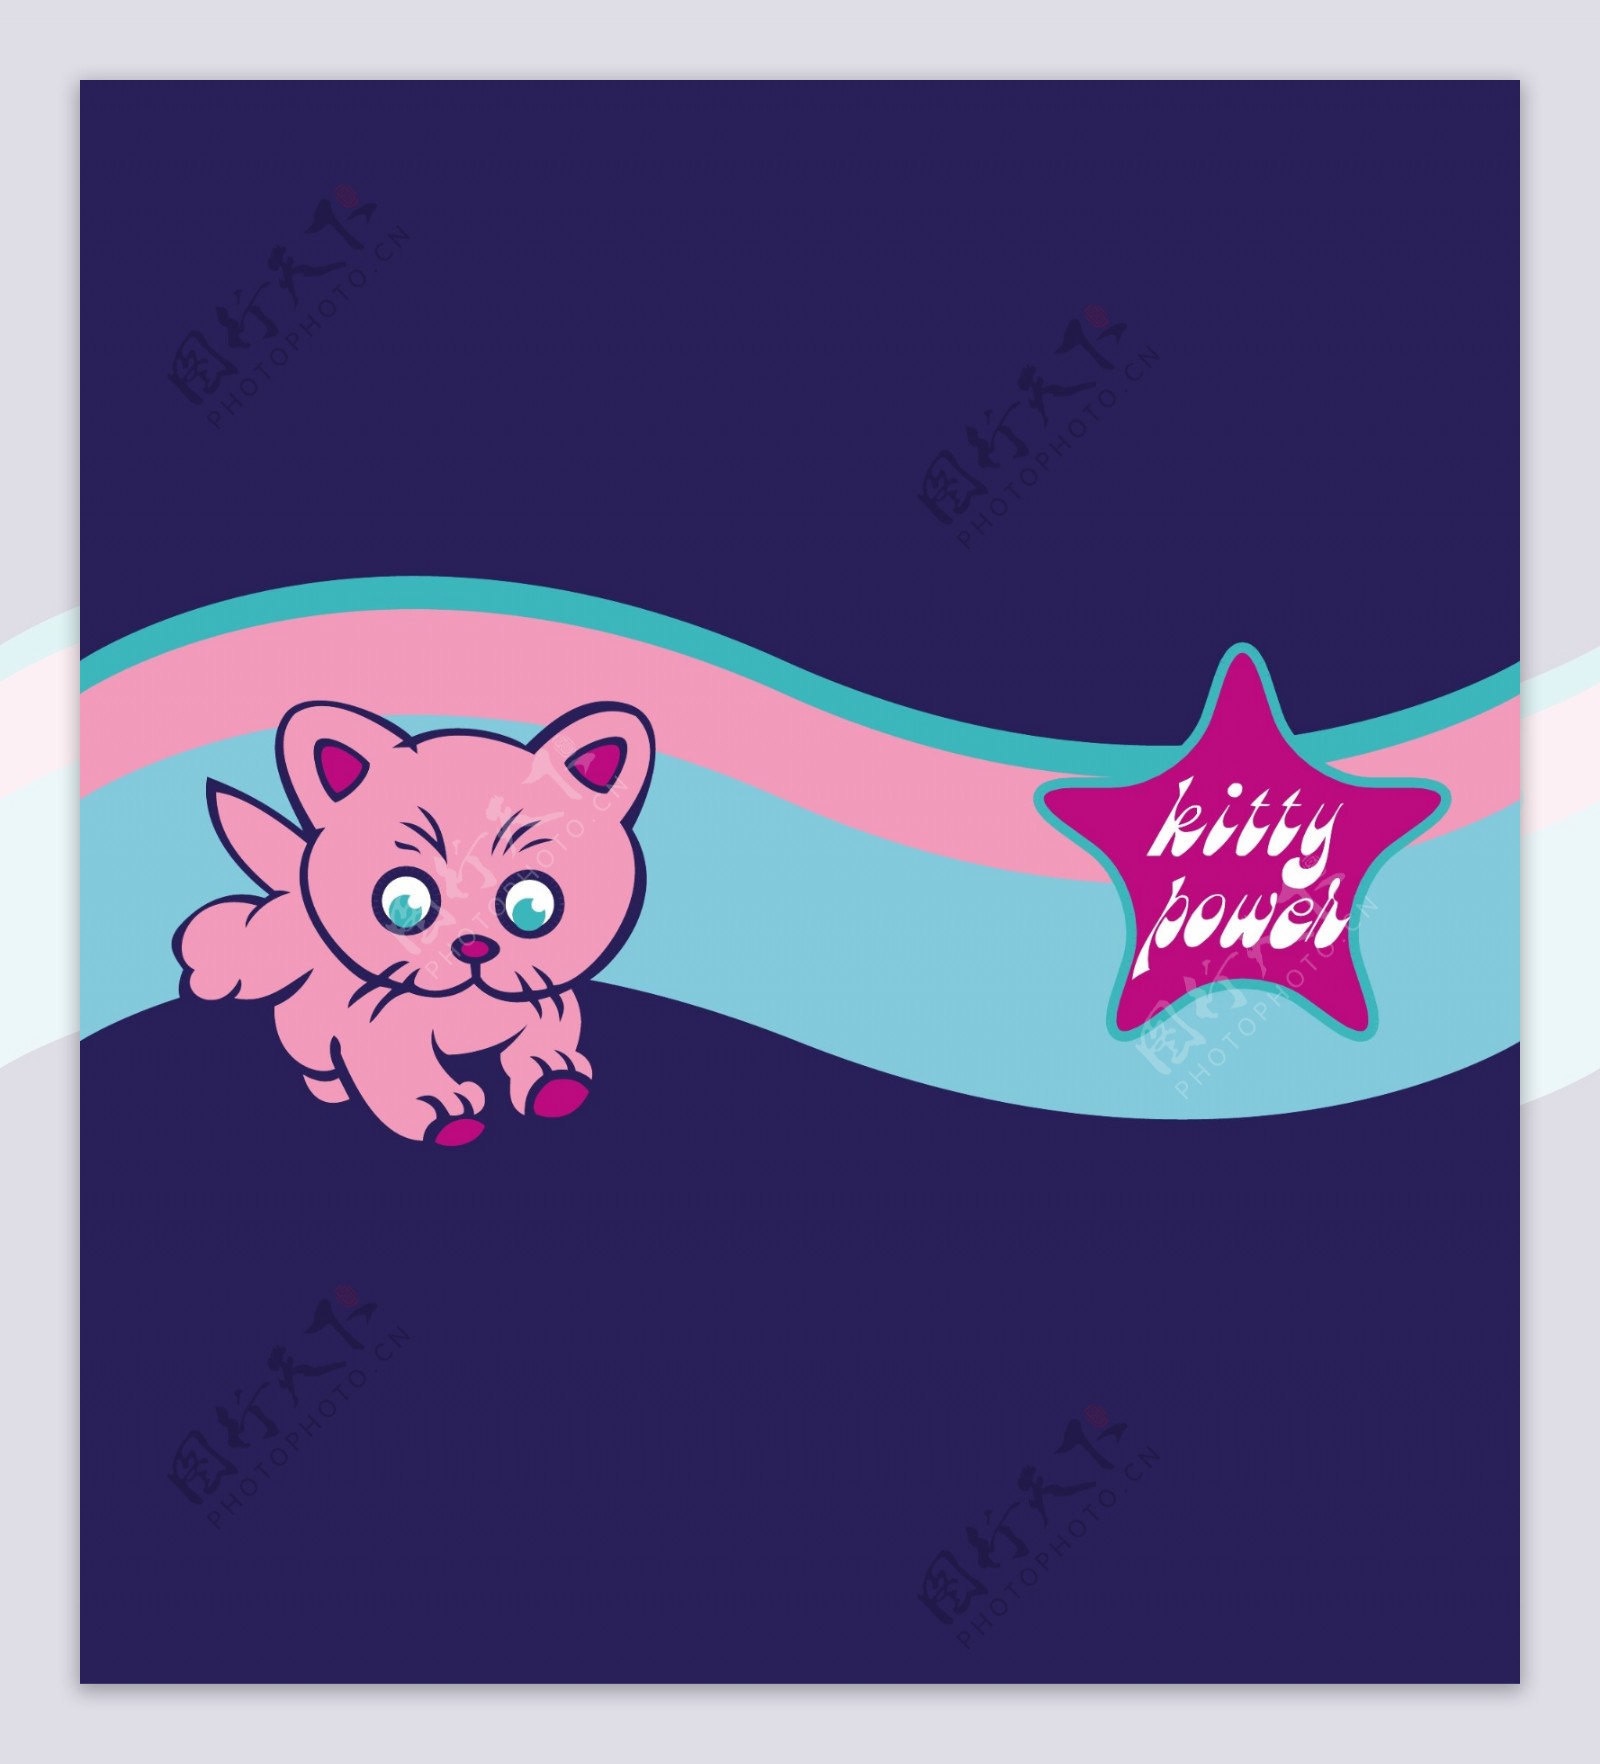 印花矢量图卡通动物猫咪星形文字免费素材